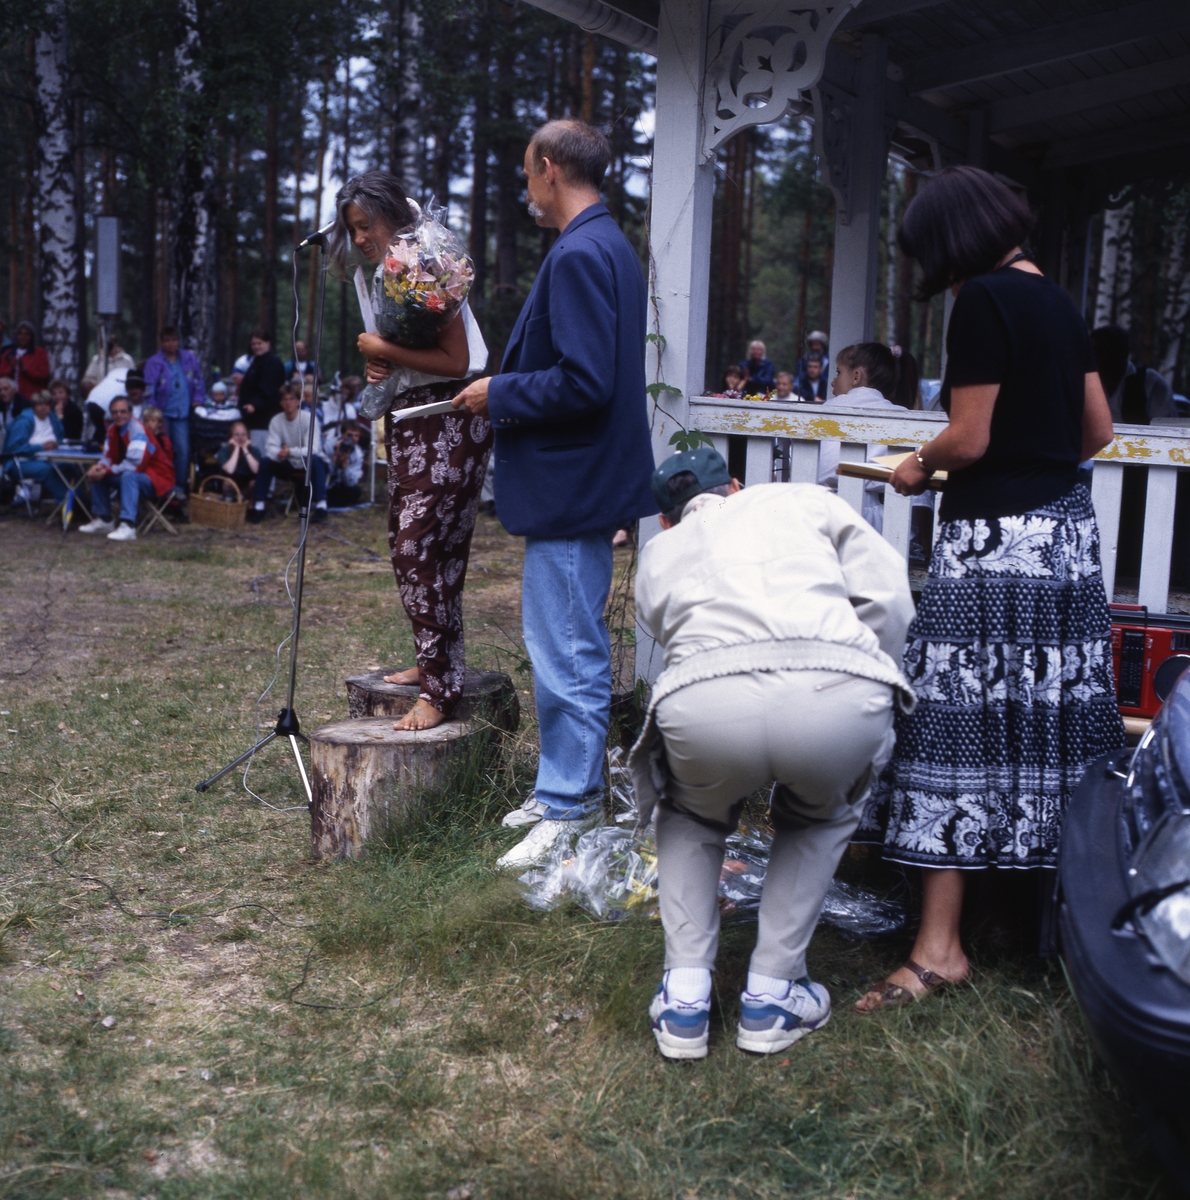 Viksten-aftonen, 11 juli 1994. En grupp männikskor sitter runt en gräsplan vid skogsbrynet. En kvinna står på en stubbe framför en mikrofon och håller en blombukett i famnen.